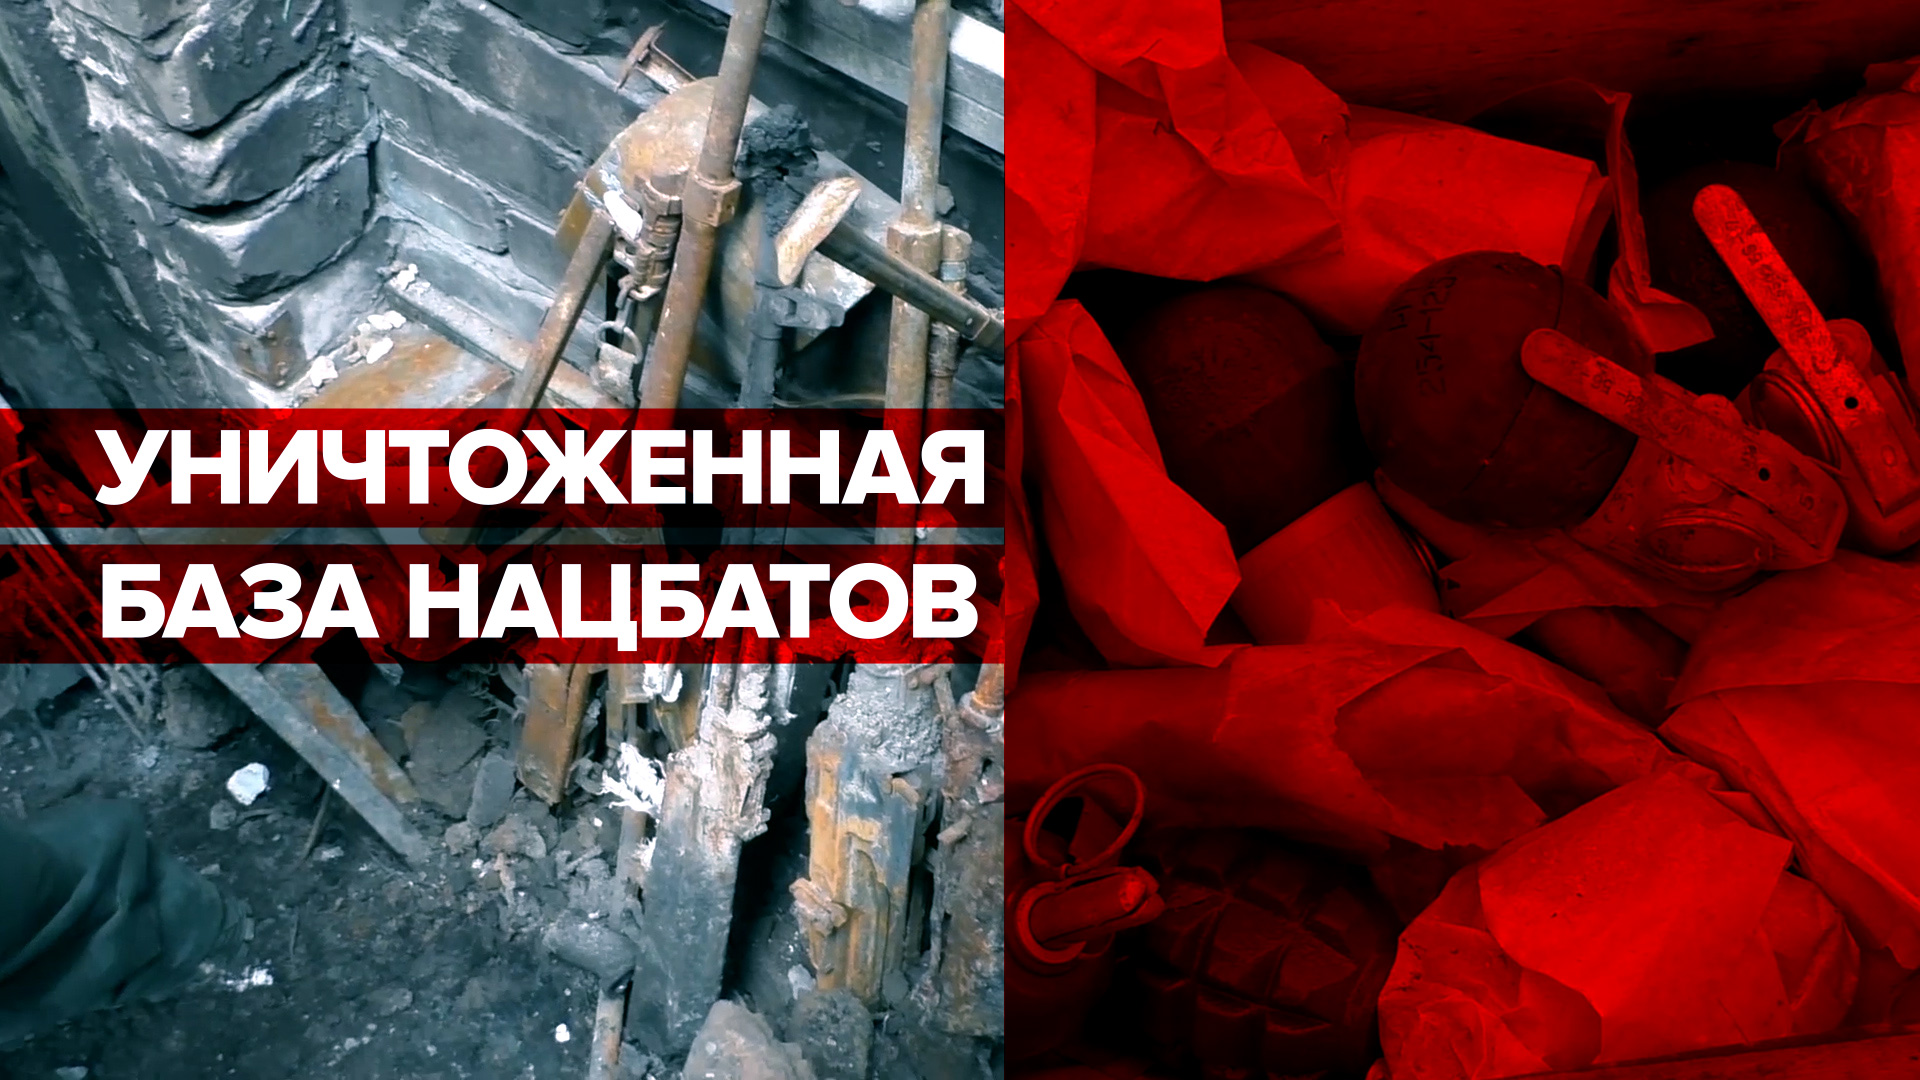 Уничтоженные позиции ВСУ и нацбатов в ЛНР — видео